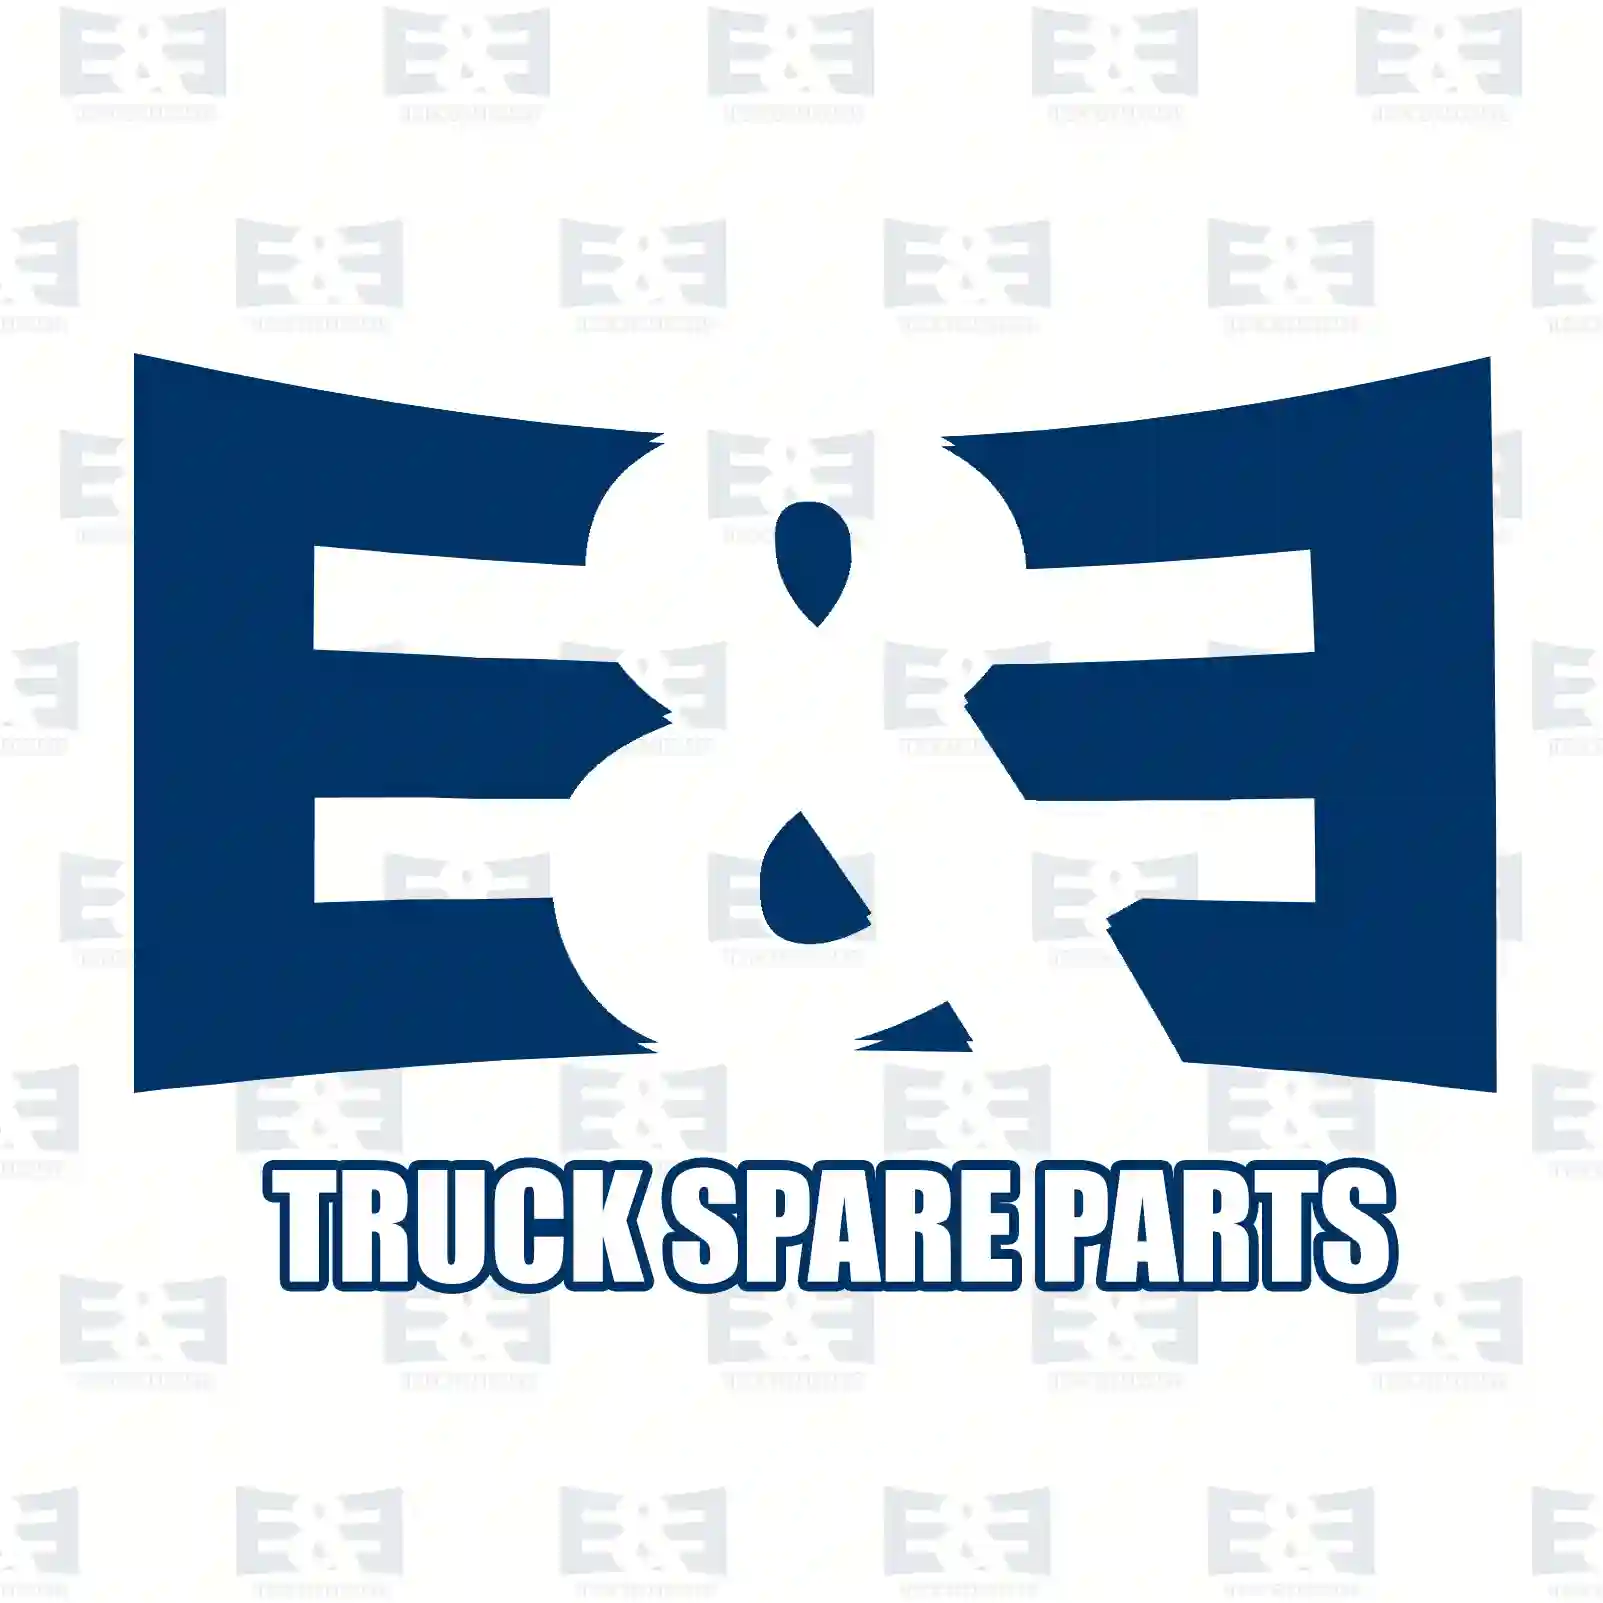 Oil cooler, 2E2207930, 504375360, 5801548657, 5801630223 ||  2E2207930 E&E Truck Spare Parts | Truck Spare Parts, Auotomotive Spare Parts Oil cooler, 2E2207930, 504375360, 5801548657, 5801630223 ||  2E2207930 E&E Truck Spare Parts | Truck Spare Parts, Auotomotive Spare Parts